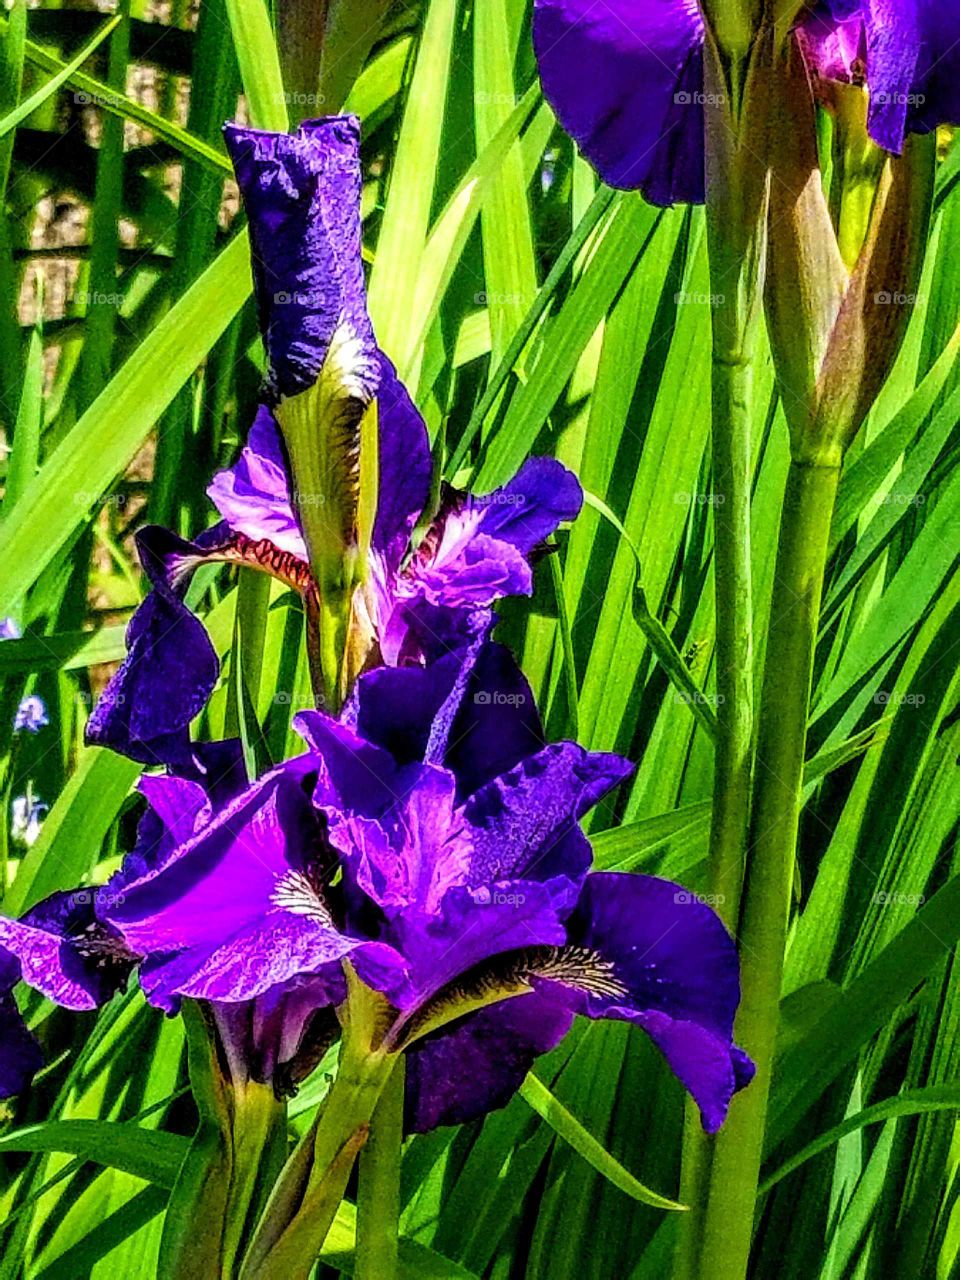 Iris spring